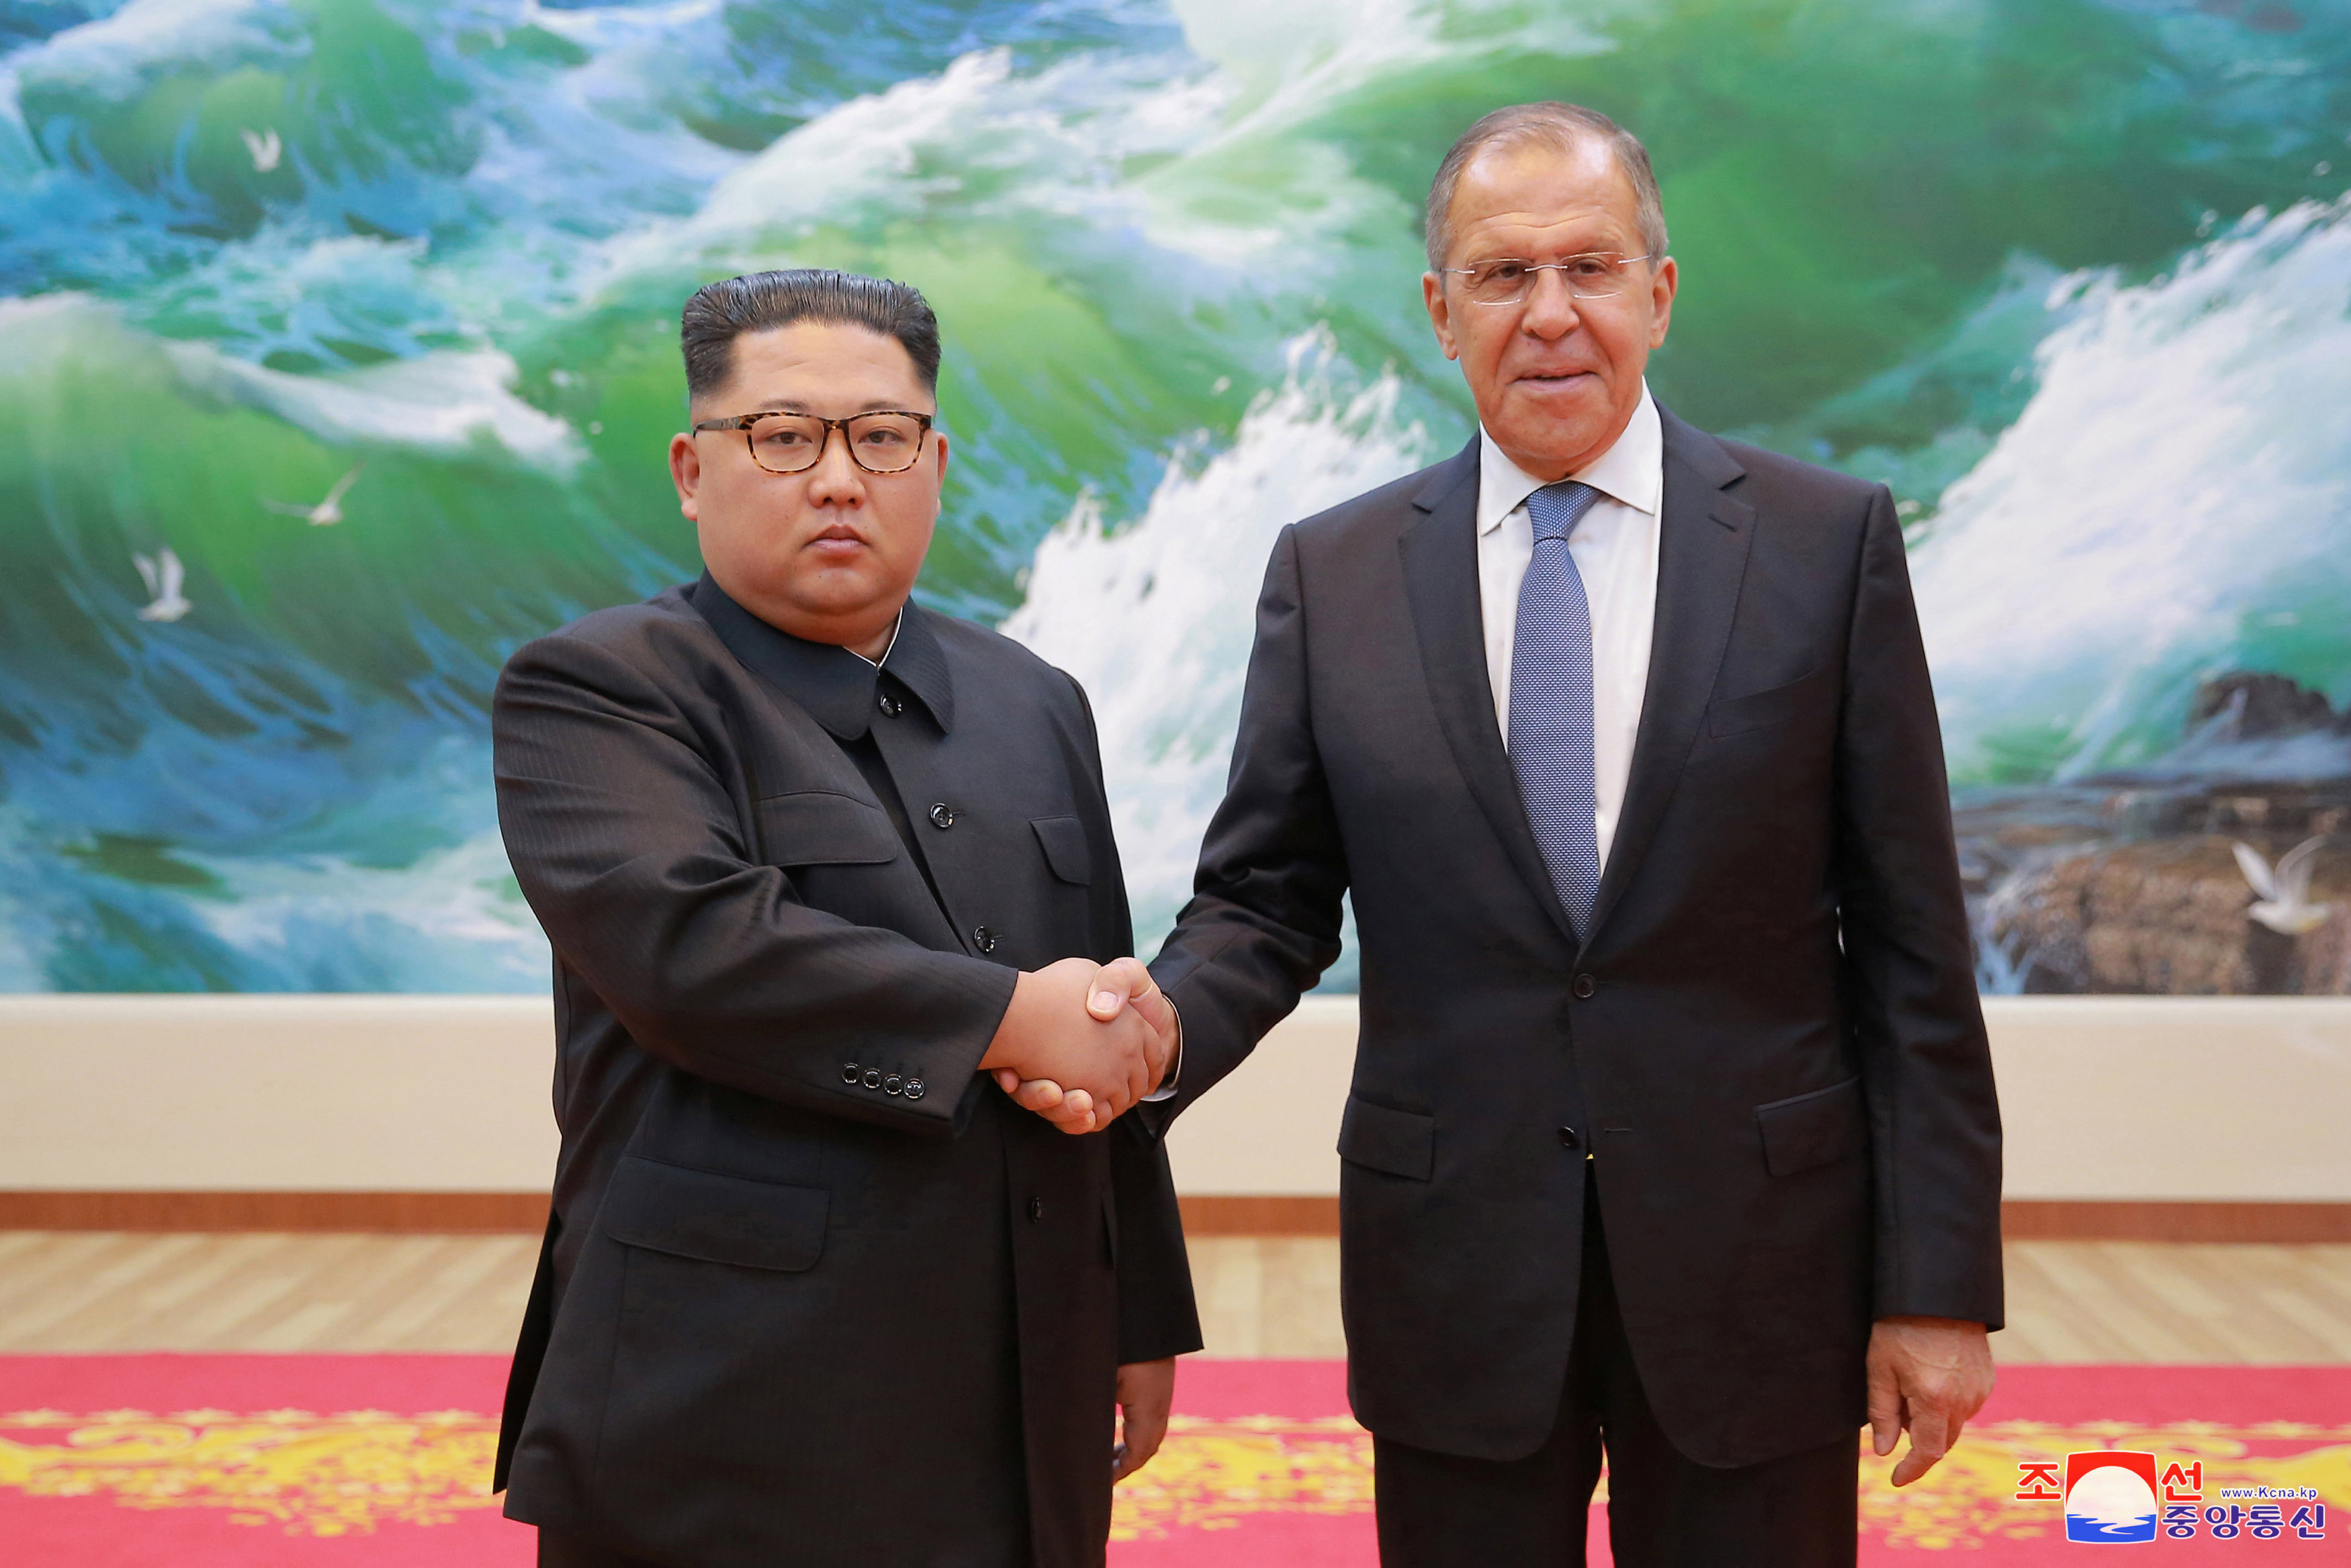 De acuerdo con el portavoz del presidente Putin, es demasiado pronto para hablar de un encuentro con el líder norcoreano.